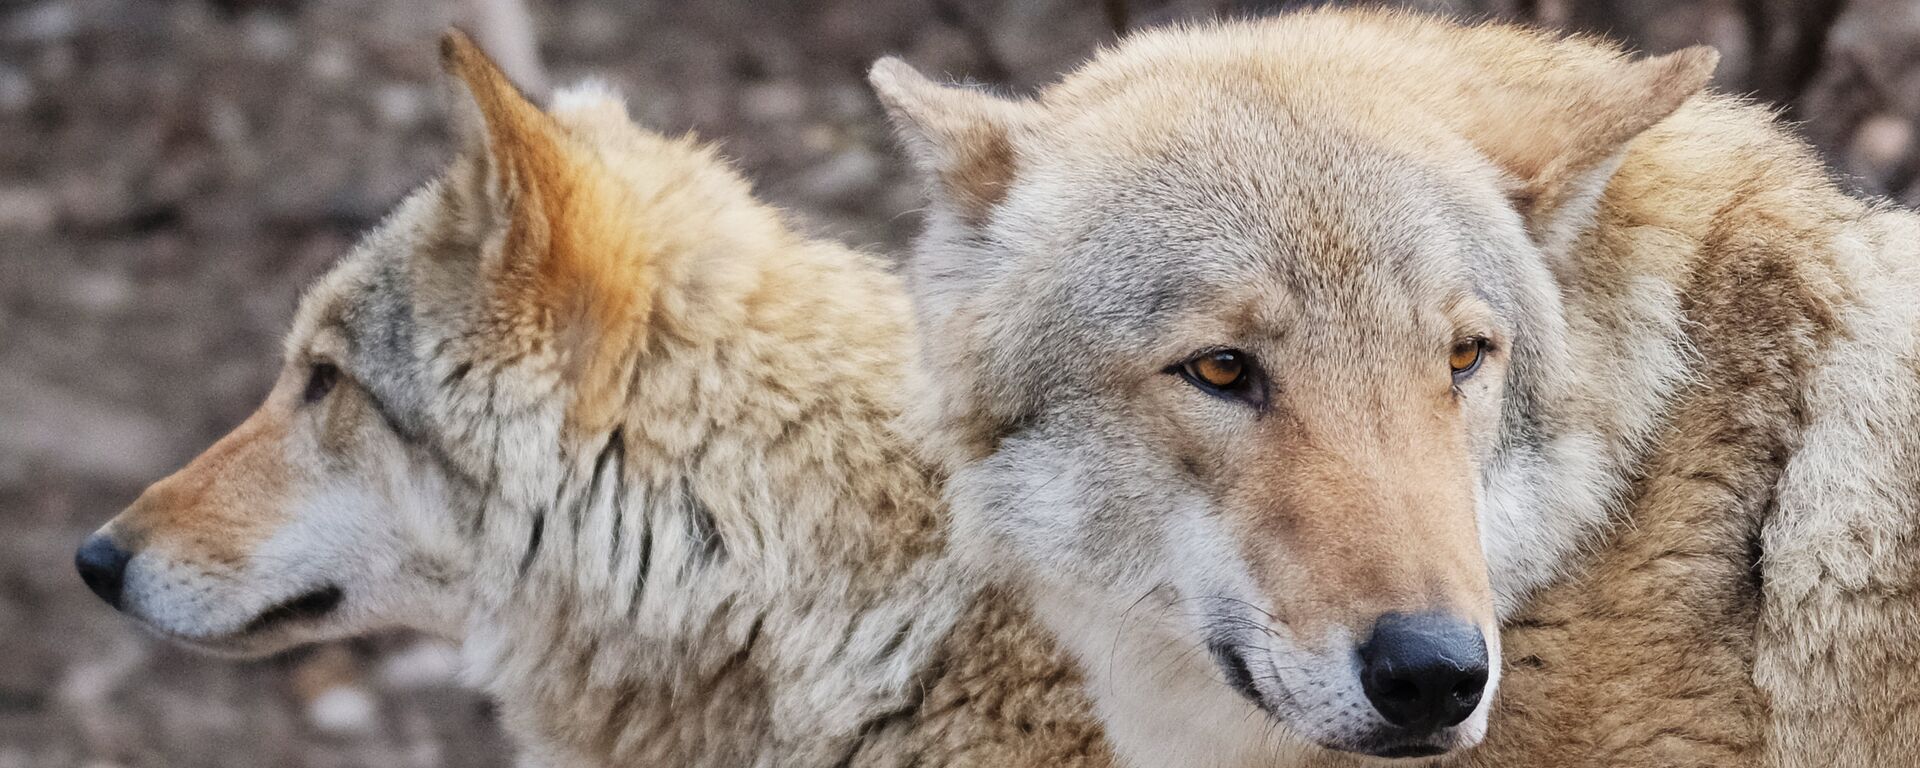 Европейские волки (canis lupus) в Московском зоопарке - Sputnik Латвия, 1920, 07.02.2021